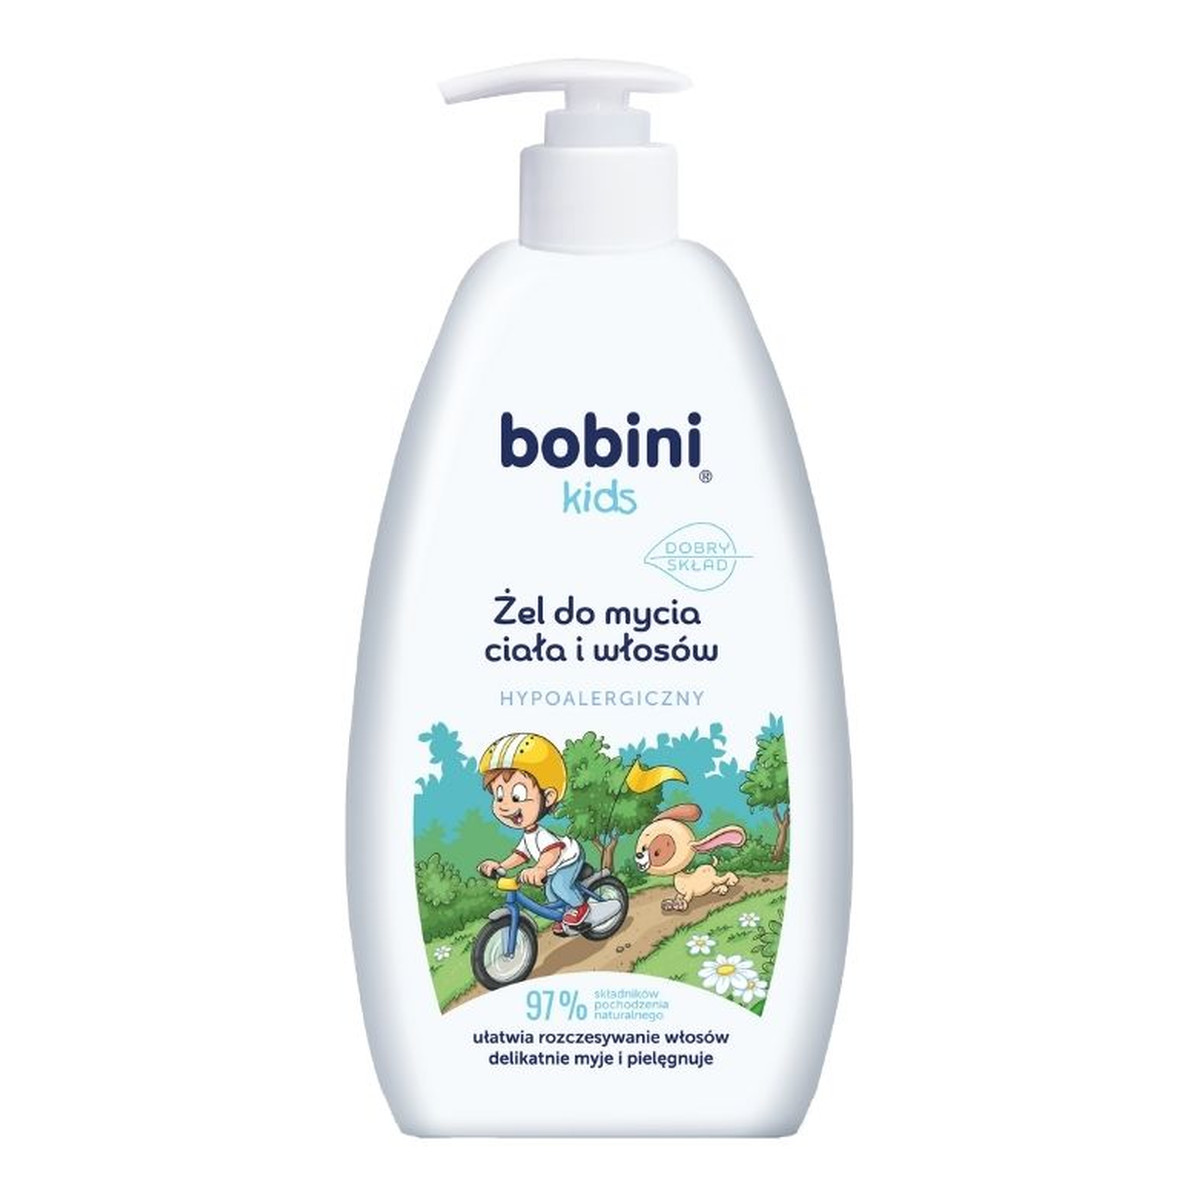 Bobini Kids hipoalergiczny Żel do mycia ciała i włosów 500ml